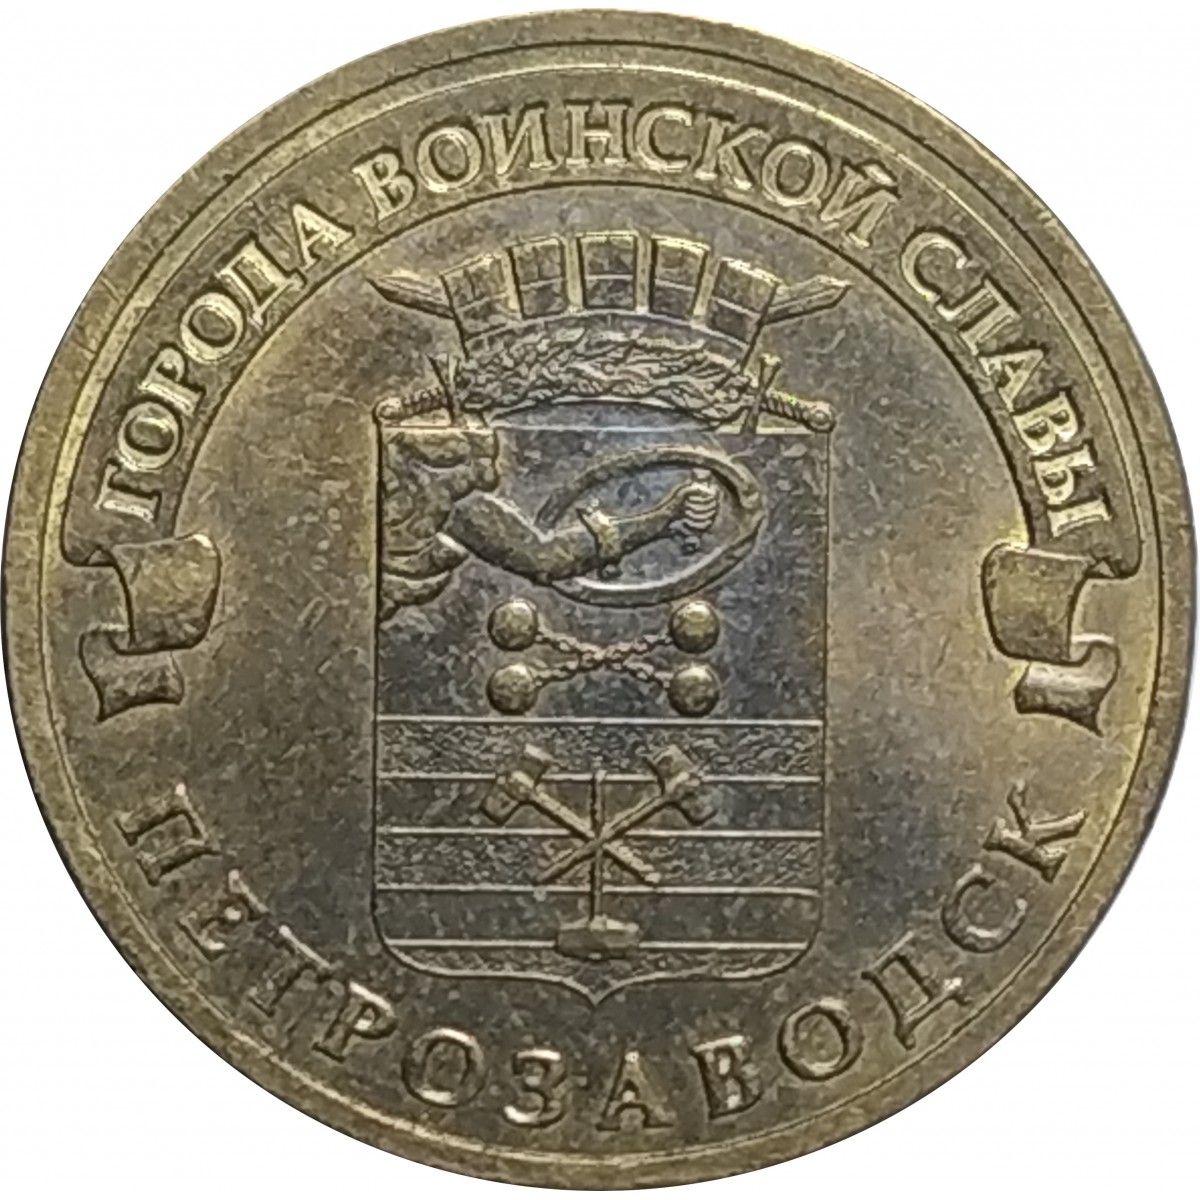 10 рублей 2016 петрозаводск. Петрозаводск монета 10.